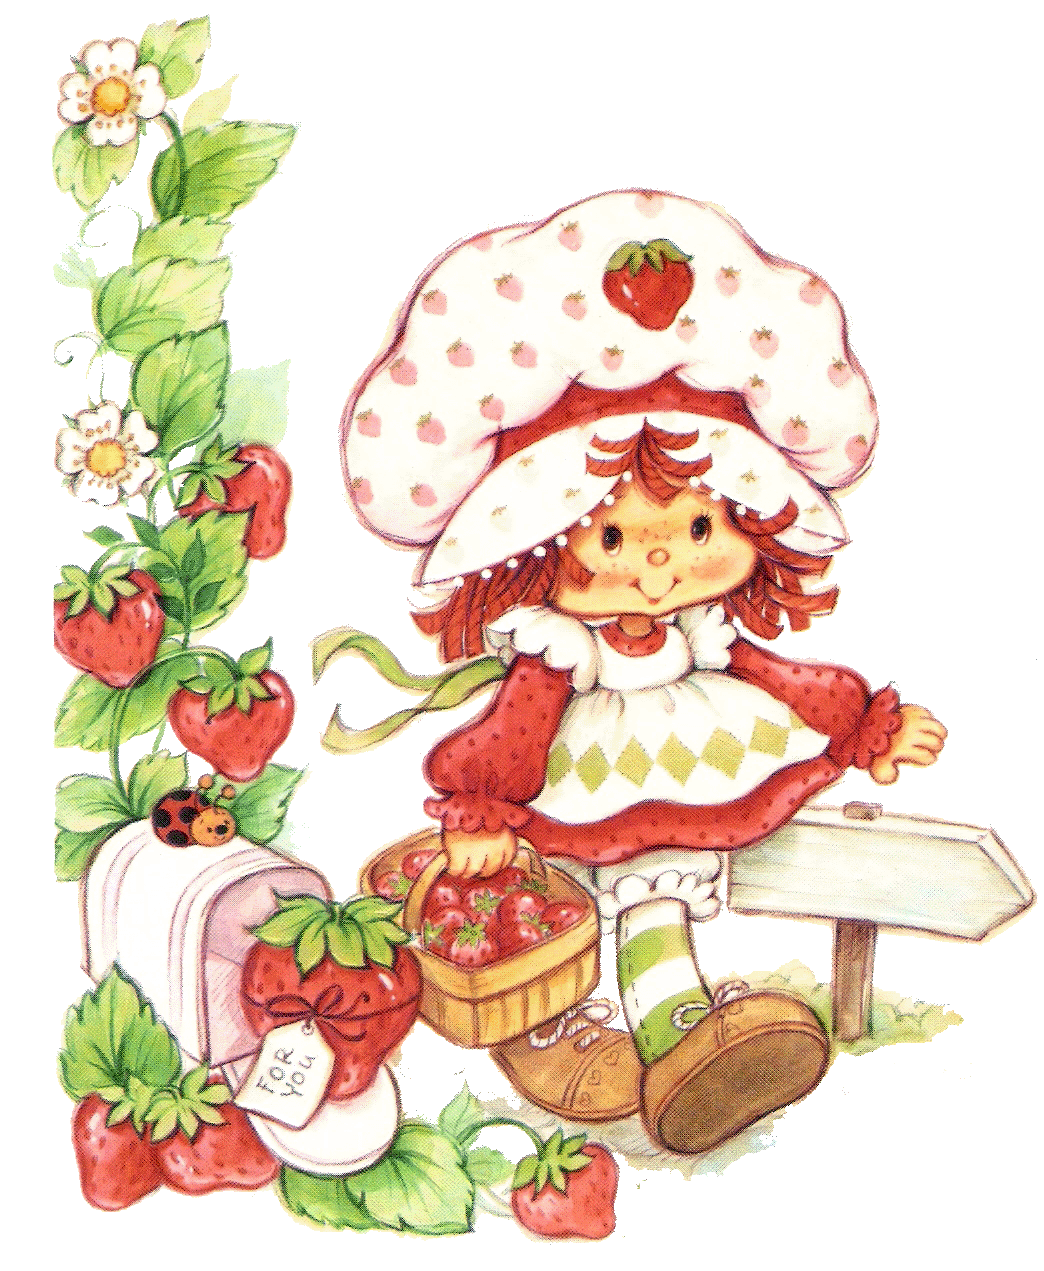 Strawberry shortcake the cute. Clipart cake retro